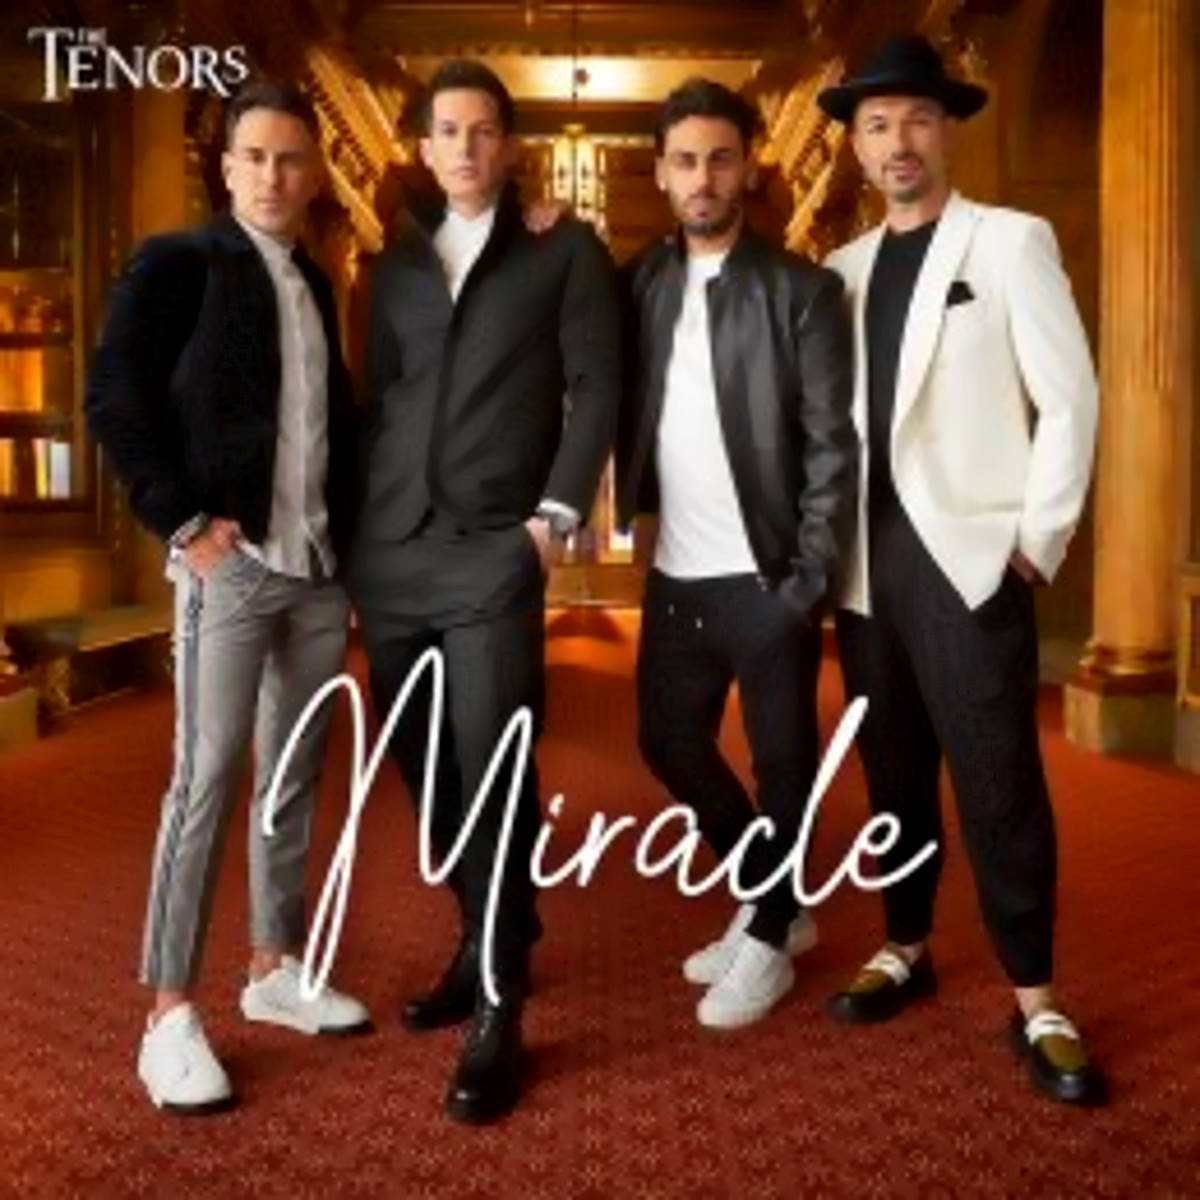 THE TENORS, “Miracle” è il nuovo singolo in radio delle quattro voci che hanno incantato il mondo che porta un messaggio di speranza e guarigione.